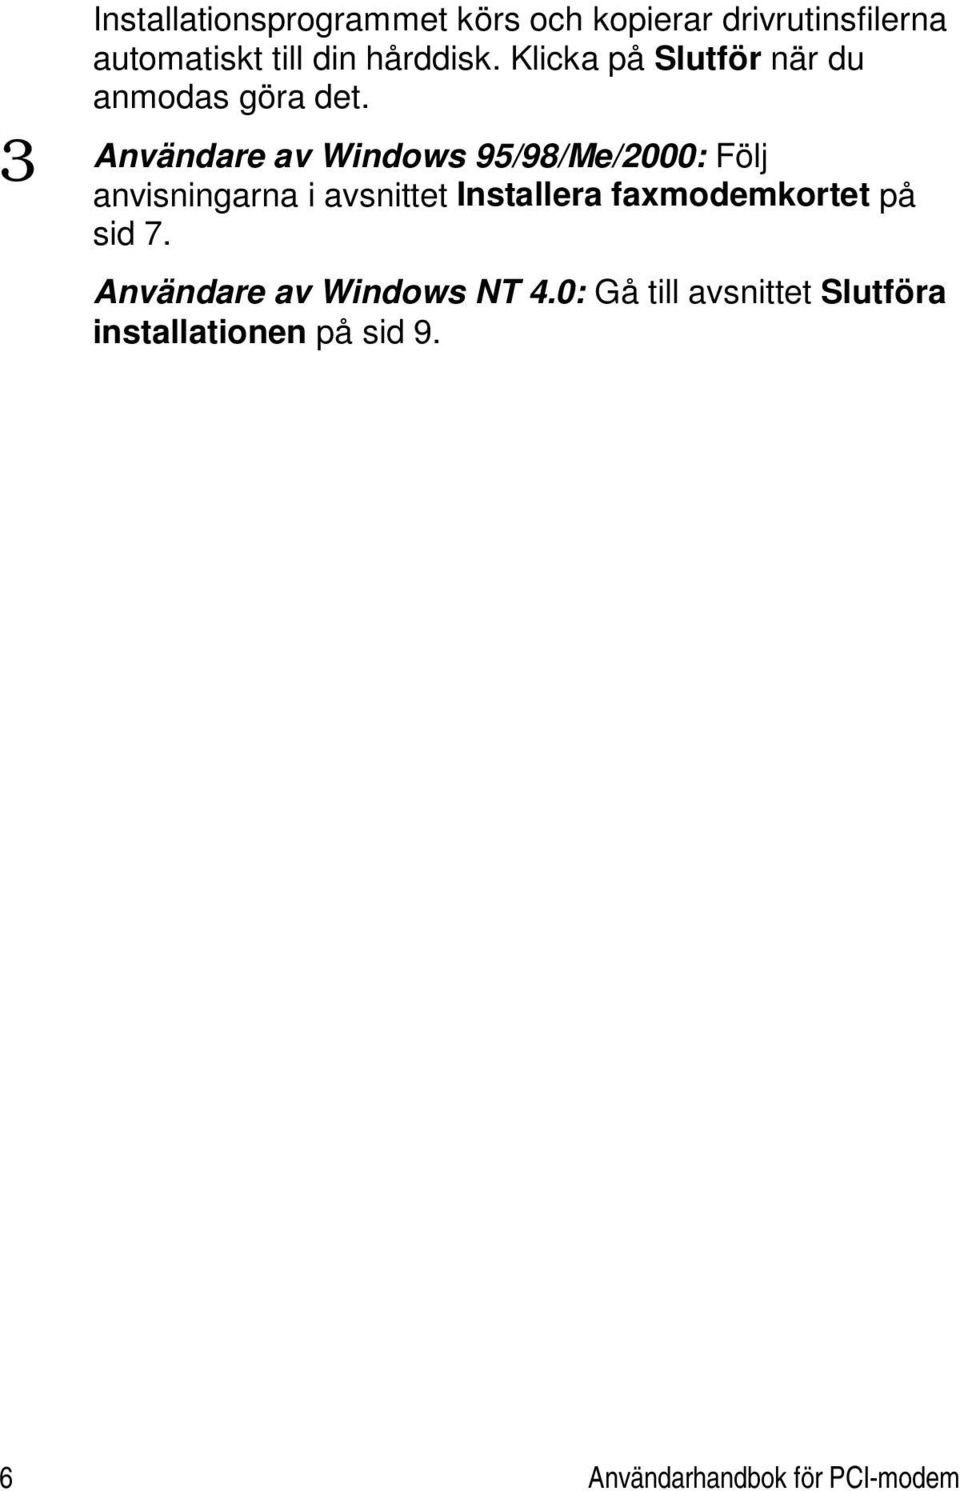 3 Användare av Windows 95/98/Me/2000: Följ anvisningarna i avsnittet Installera